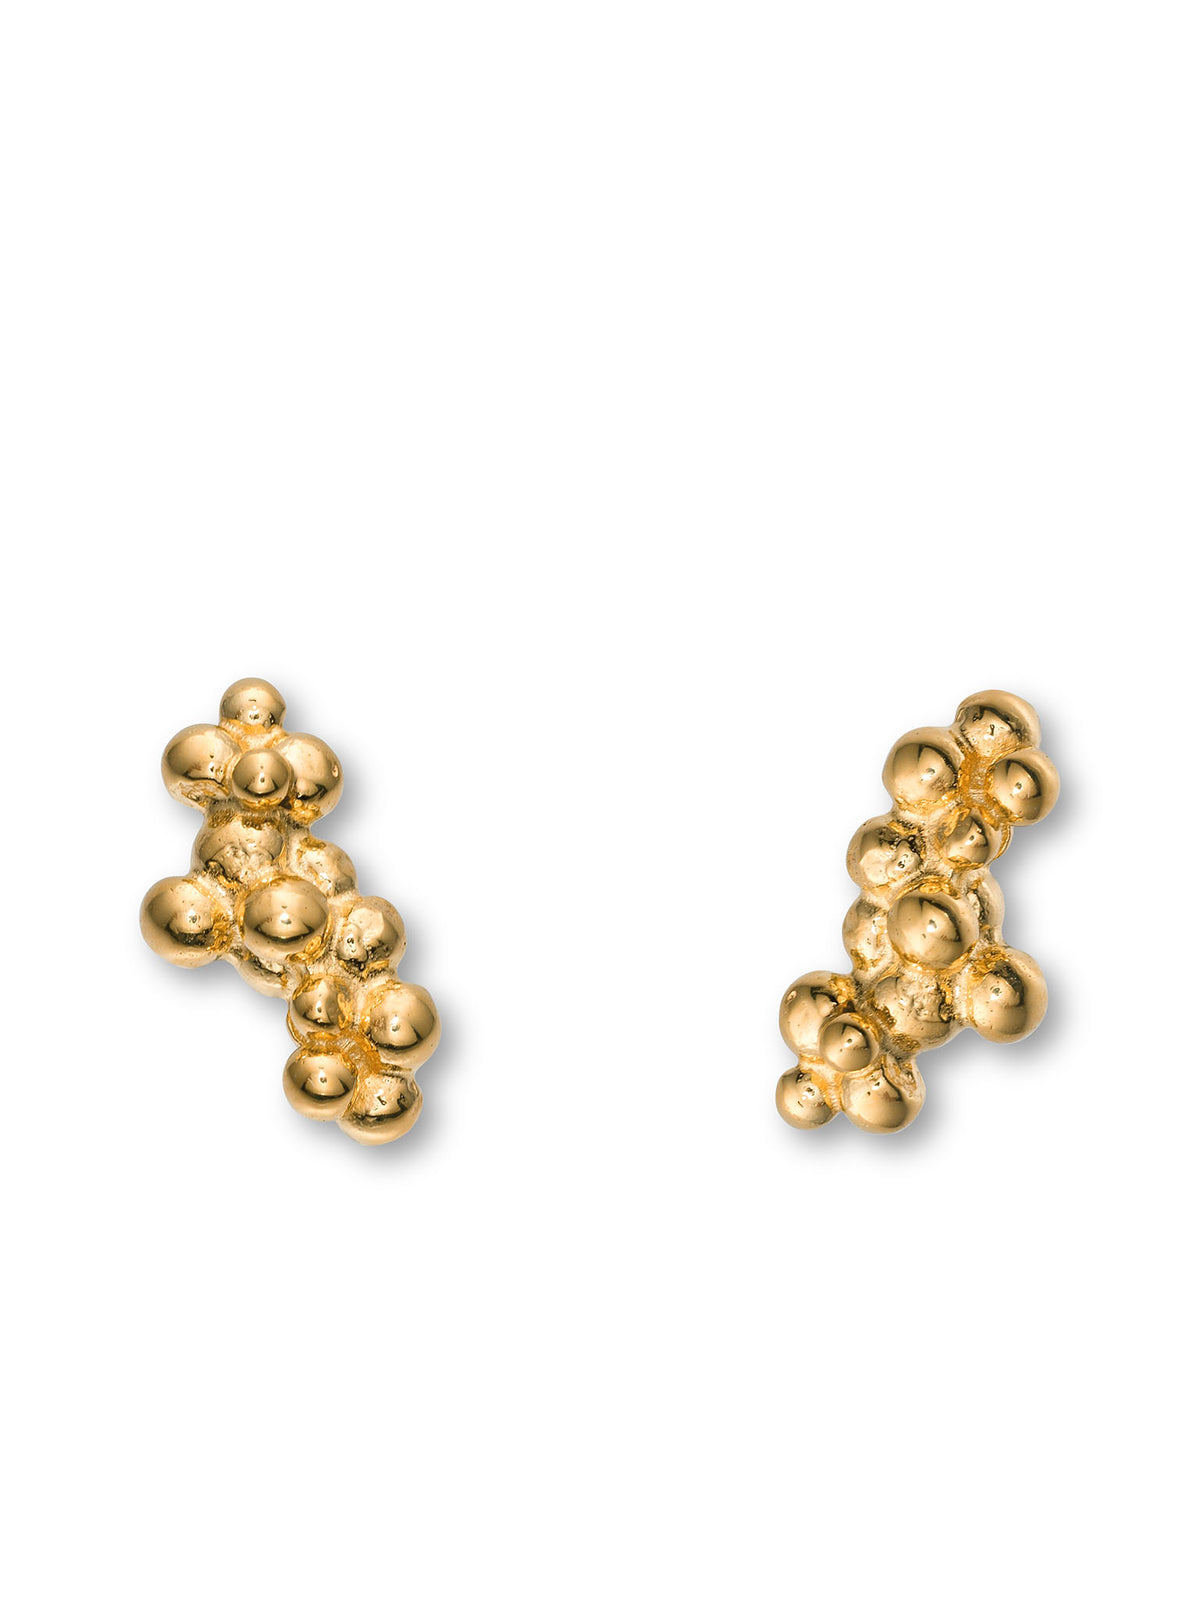 Céleste Deux Caviar Stud Earrings 14ct Gold